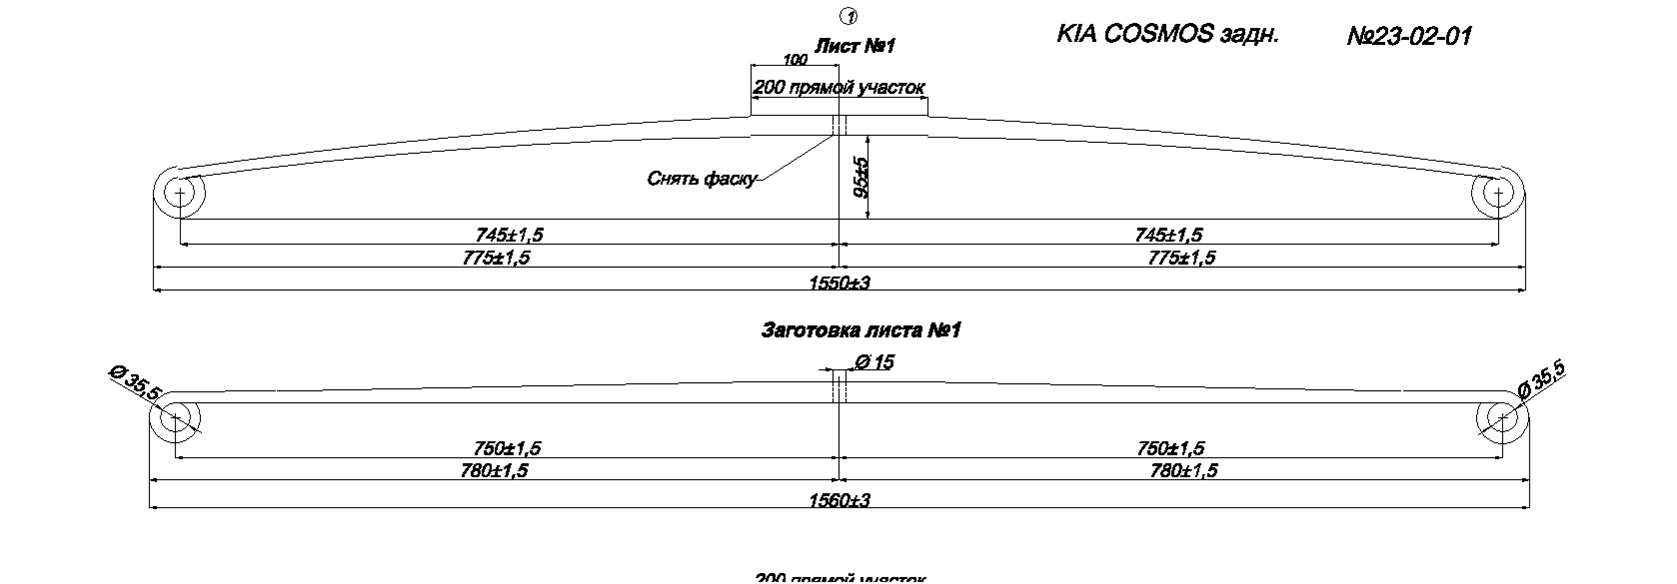 KIA COSMOS рессора задняя лист № 1 (Арт. IR 23-02-01)
Лист может изготавливаться так же из полосы 80*25/12 или 80*22/12
,